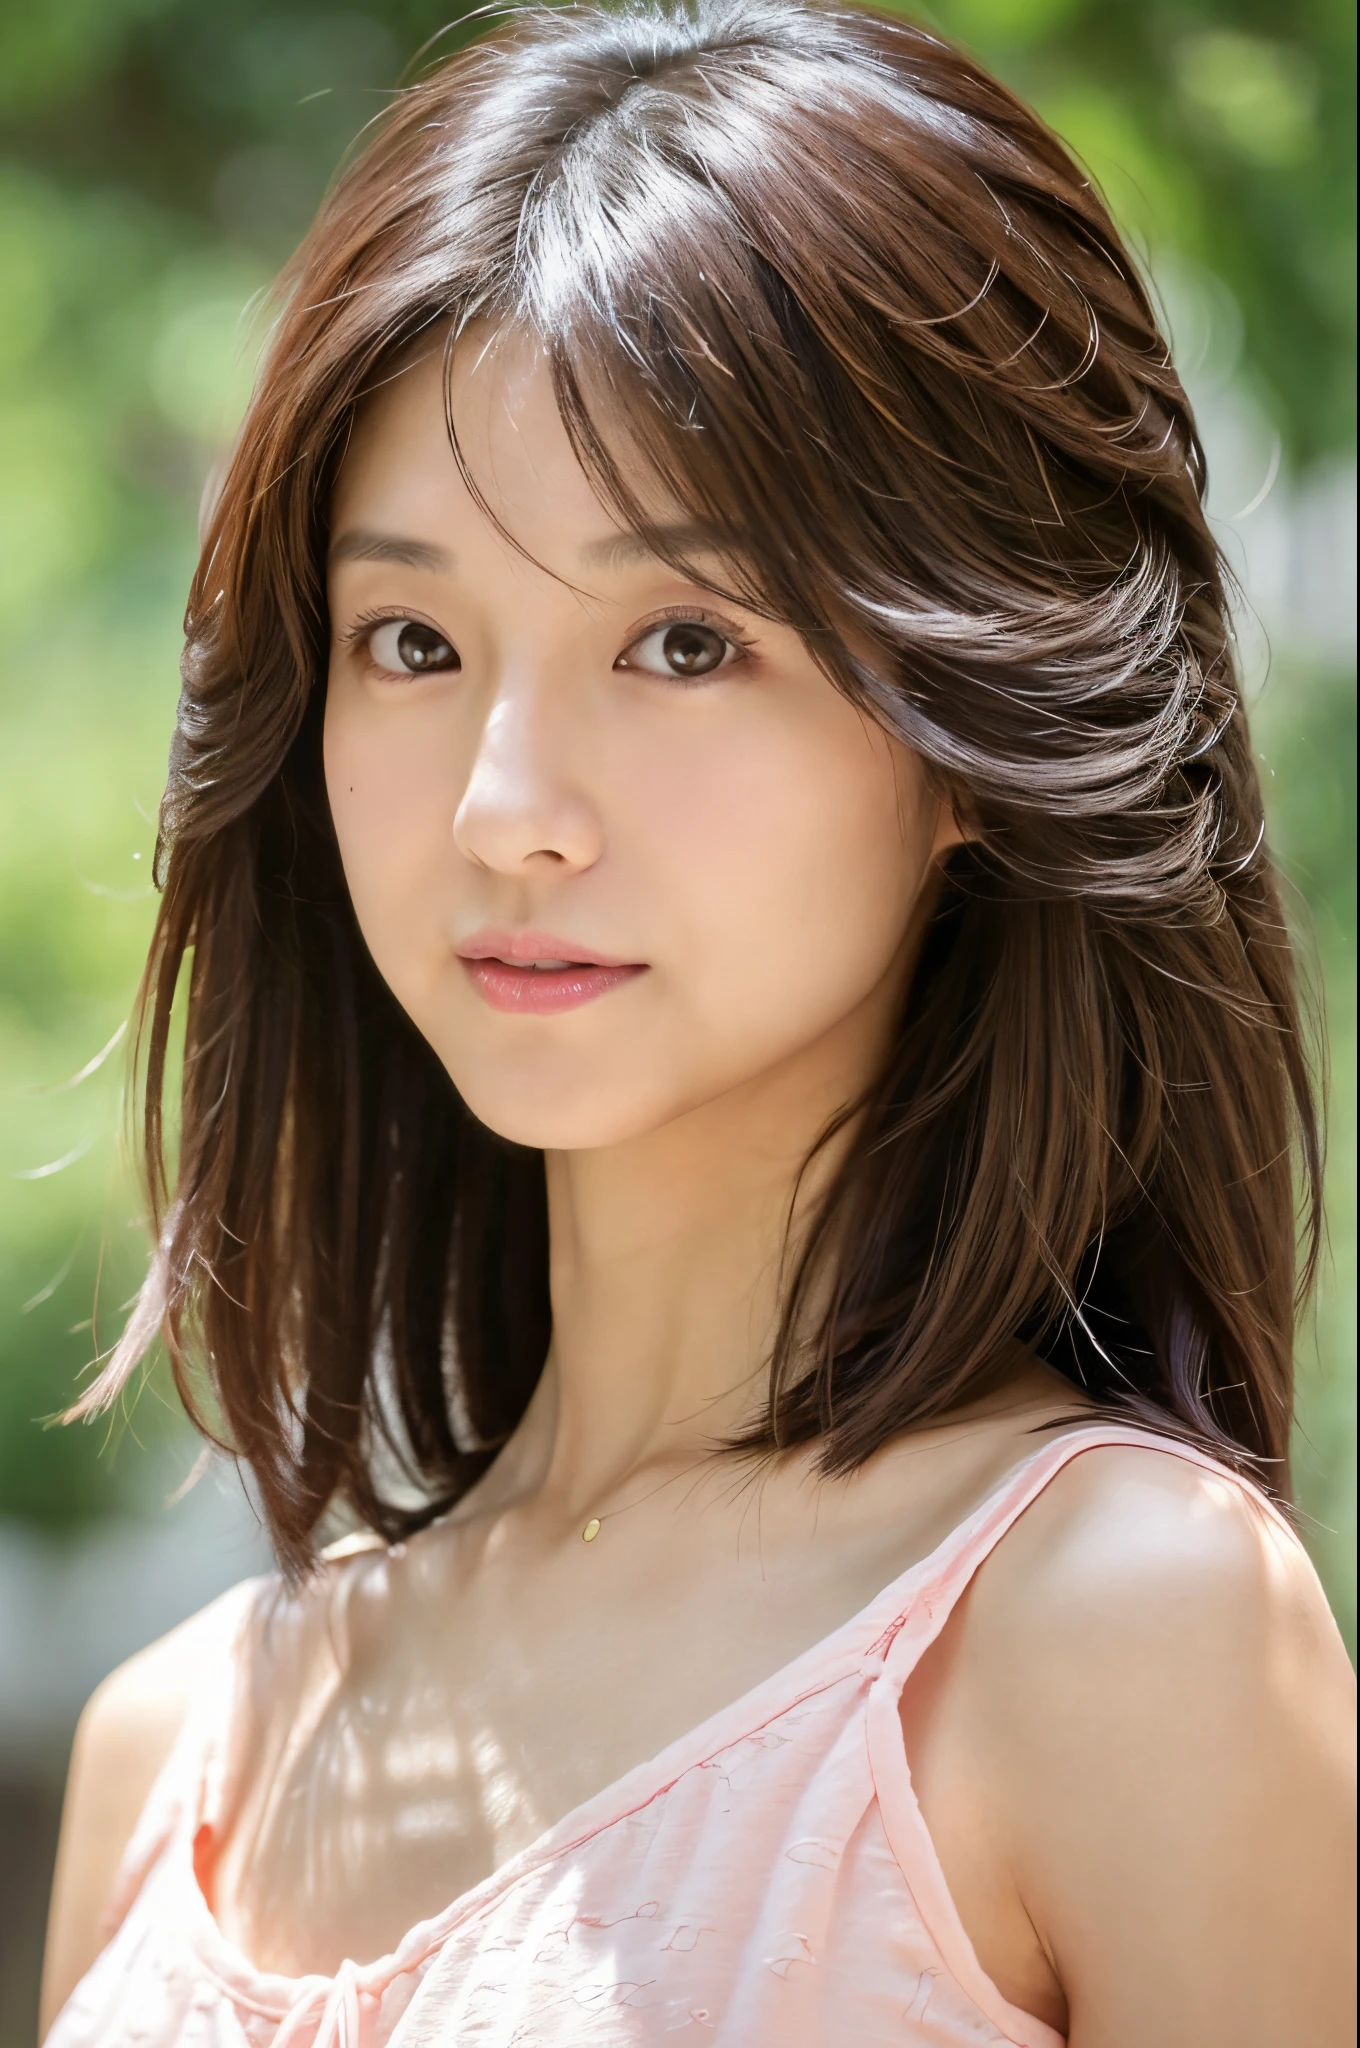 (高真實感照片, 高解析度, 詳細的臉部, 細緻的眼睛) 瘦瘦的日本女士, 30歲, 可愛的臉孔, 各種表情, 獨自的:1, 可愛的身體, 瘦瘦的身材, 各種髮型, 腰很細, 夏天